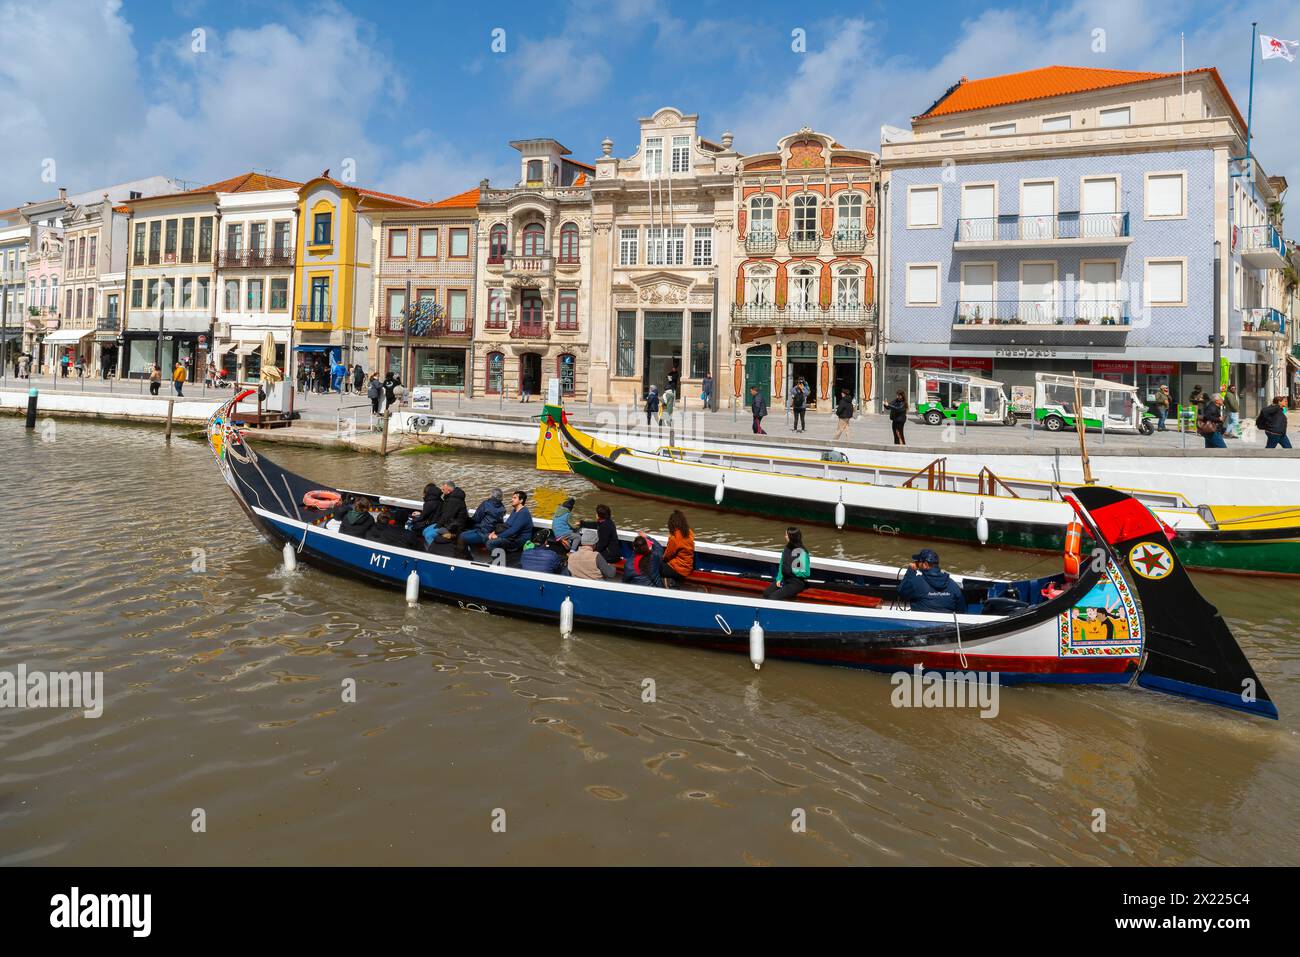 Maisons colorées près de canal Central. Pittoresque et belle petite ville Aveiro au Portugal. Une célèbre ville portugaise connue pour sa rivière et ses canaux. Aveiro Banque D'Images